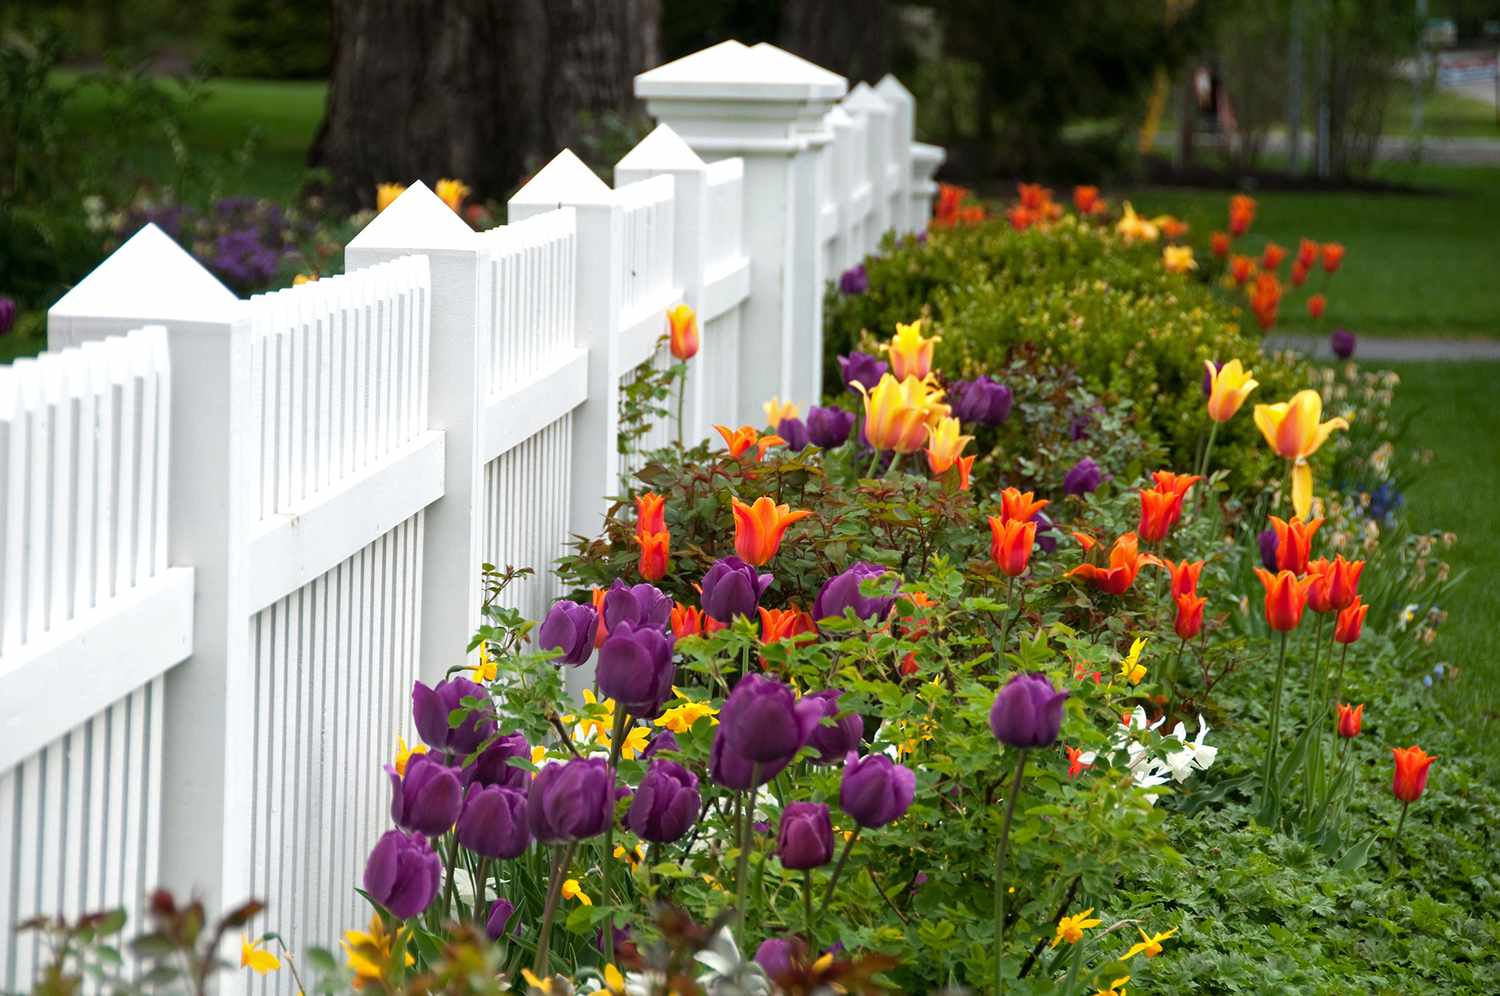 Préparez votre jardin pour les nouvelles fleurs printanières